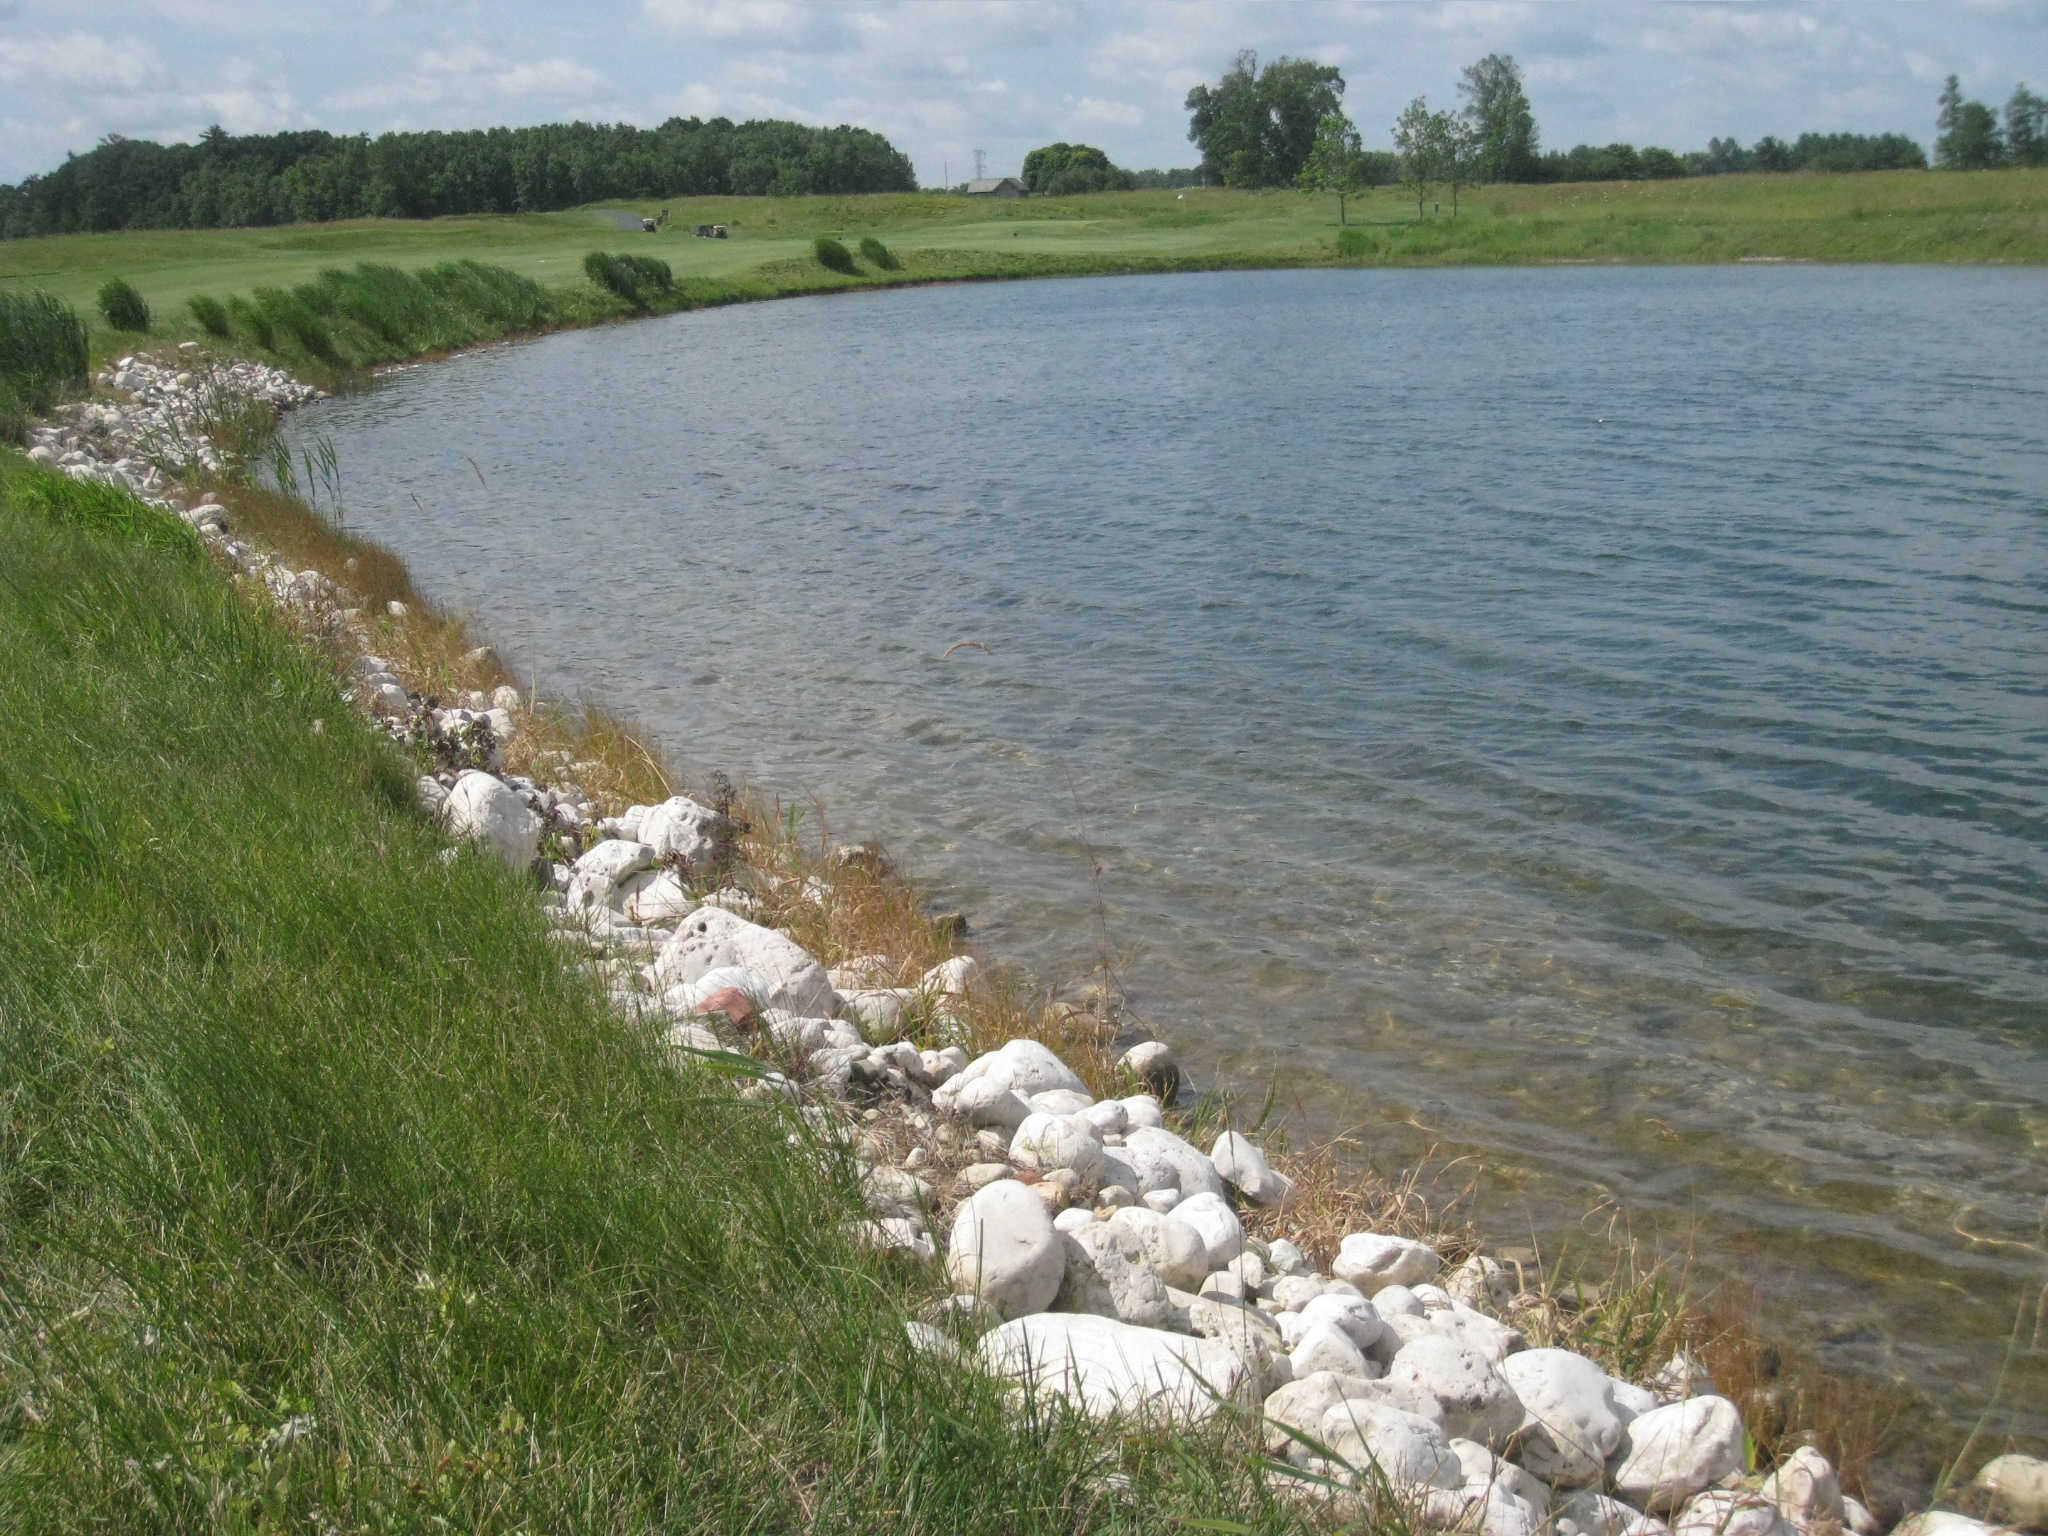 rocks near a large lake in a field